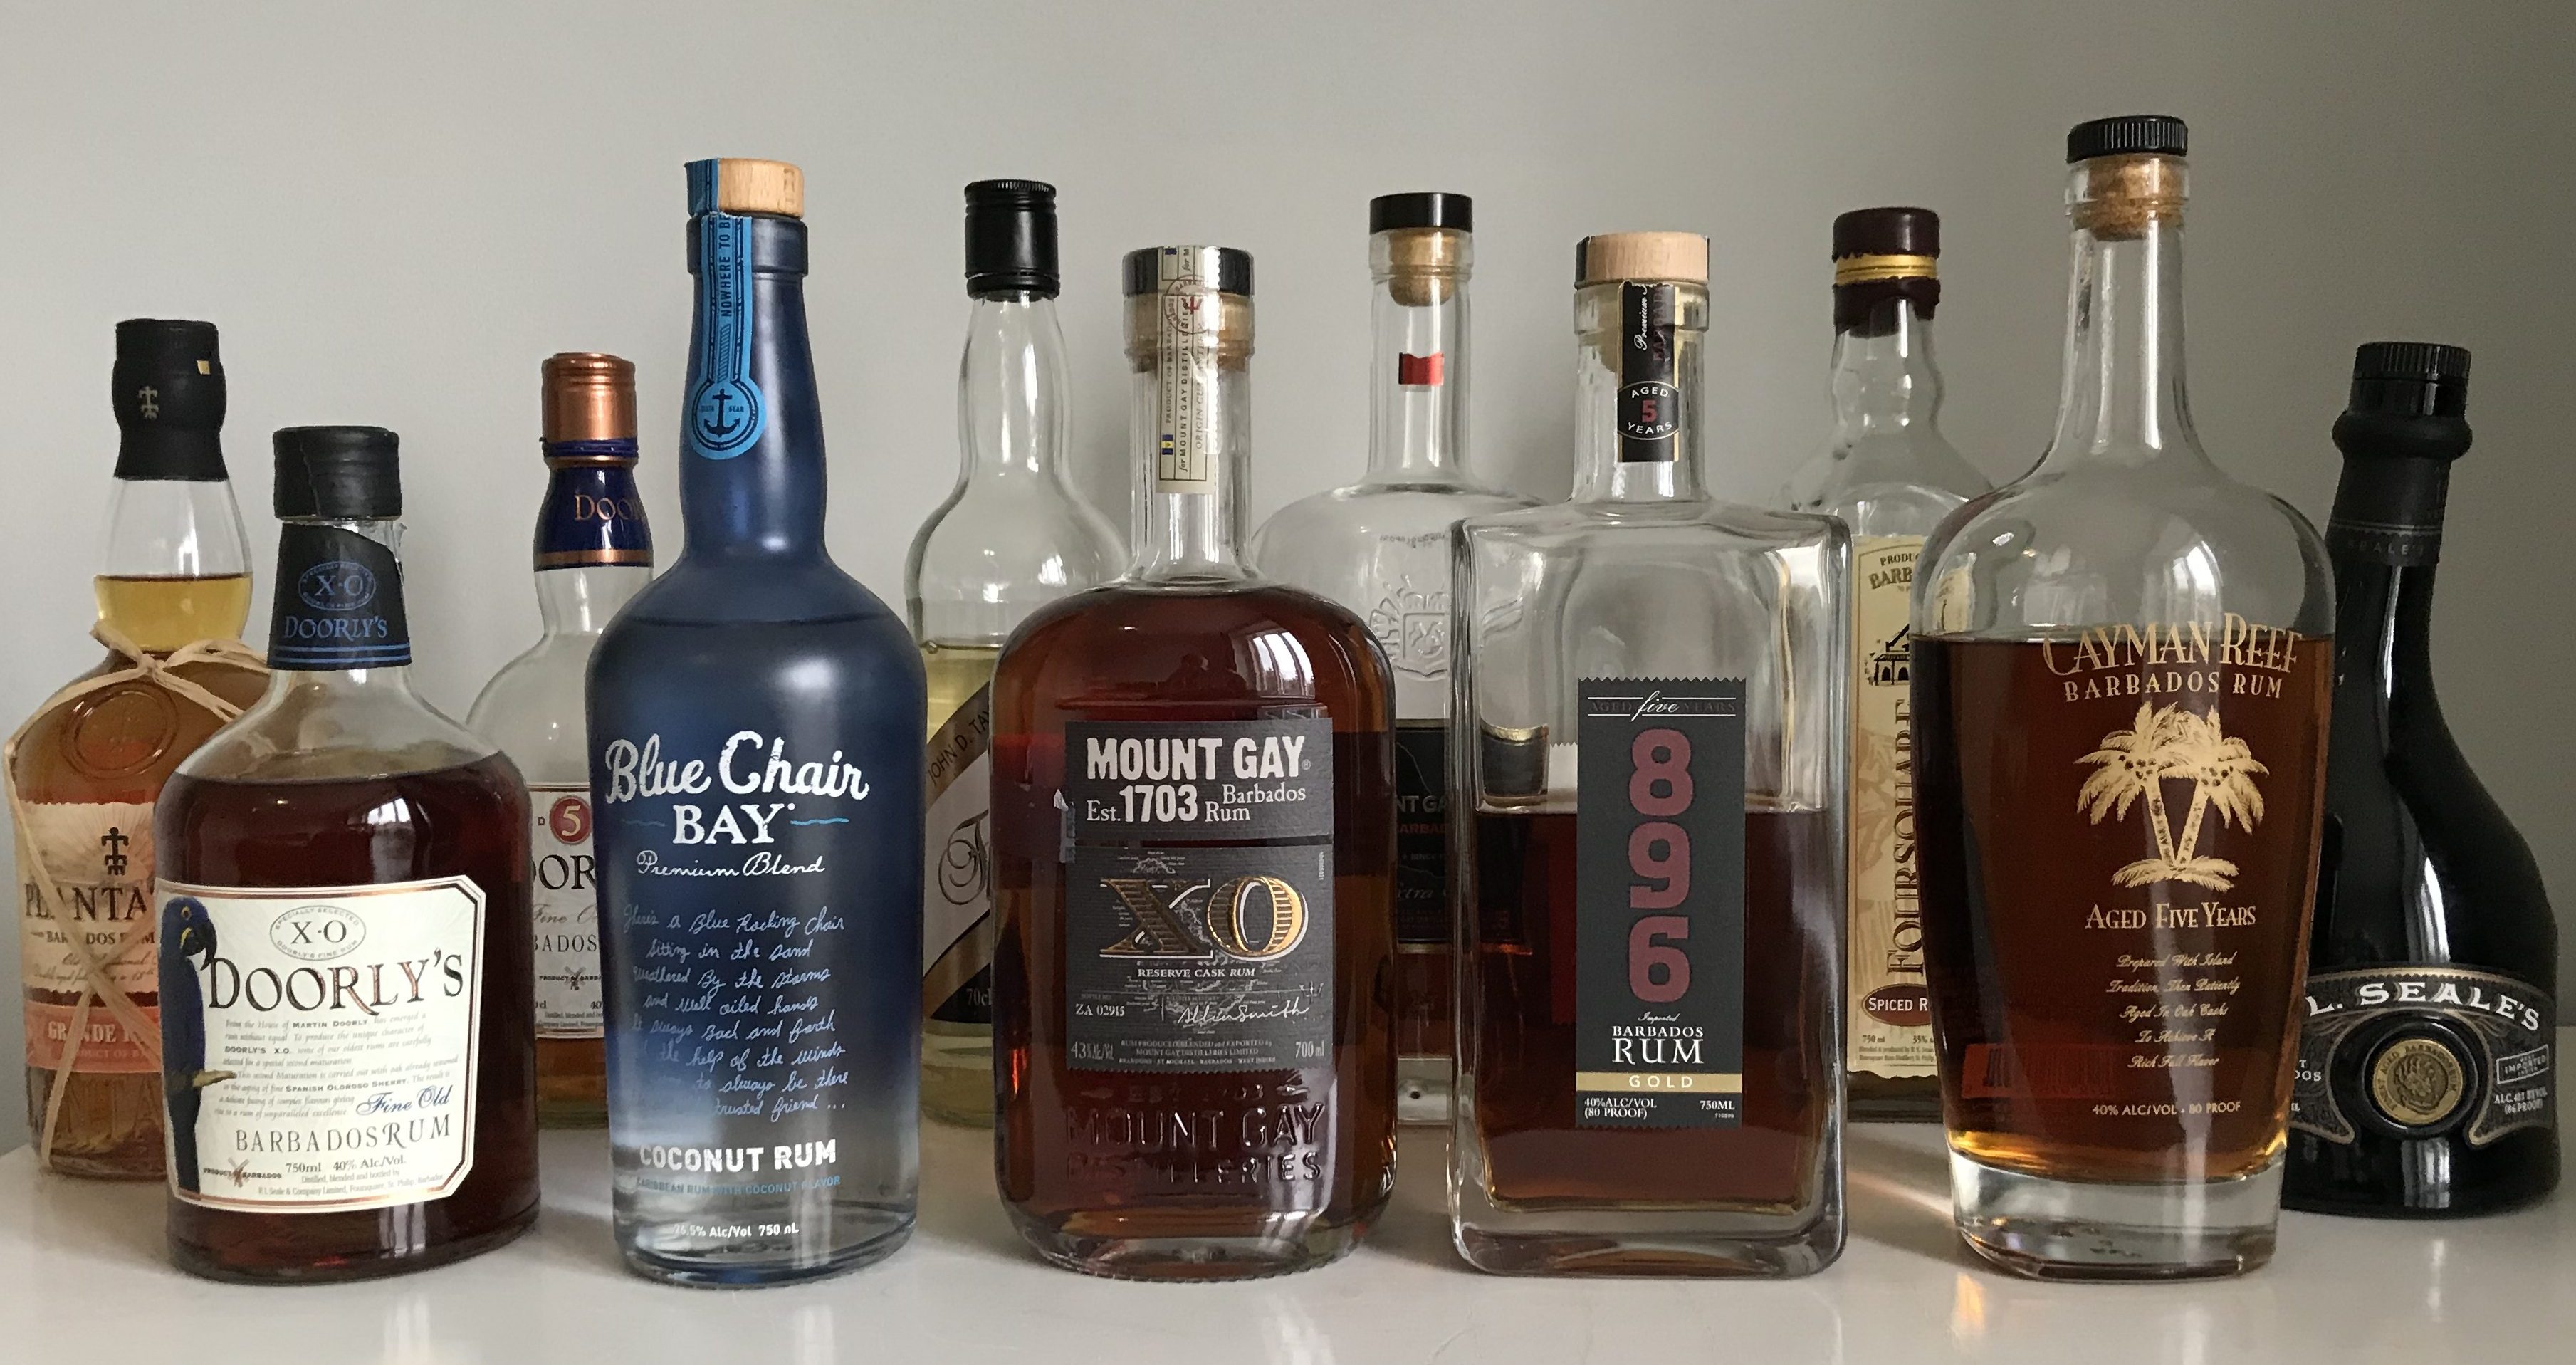 Barbados Rum